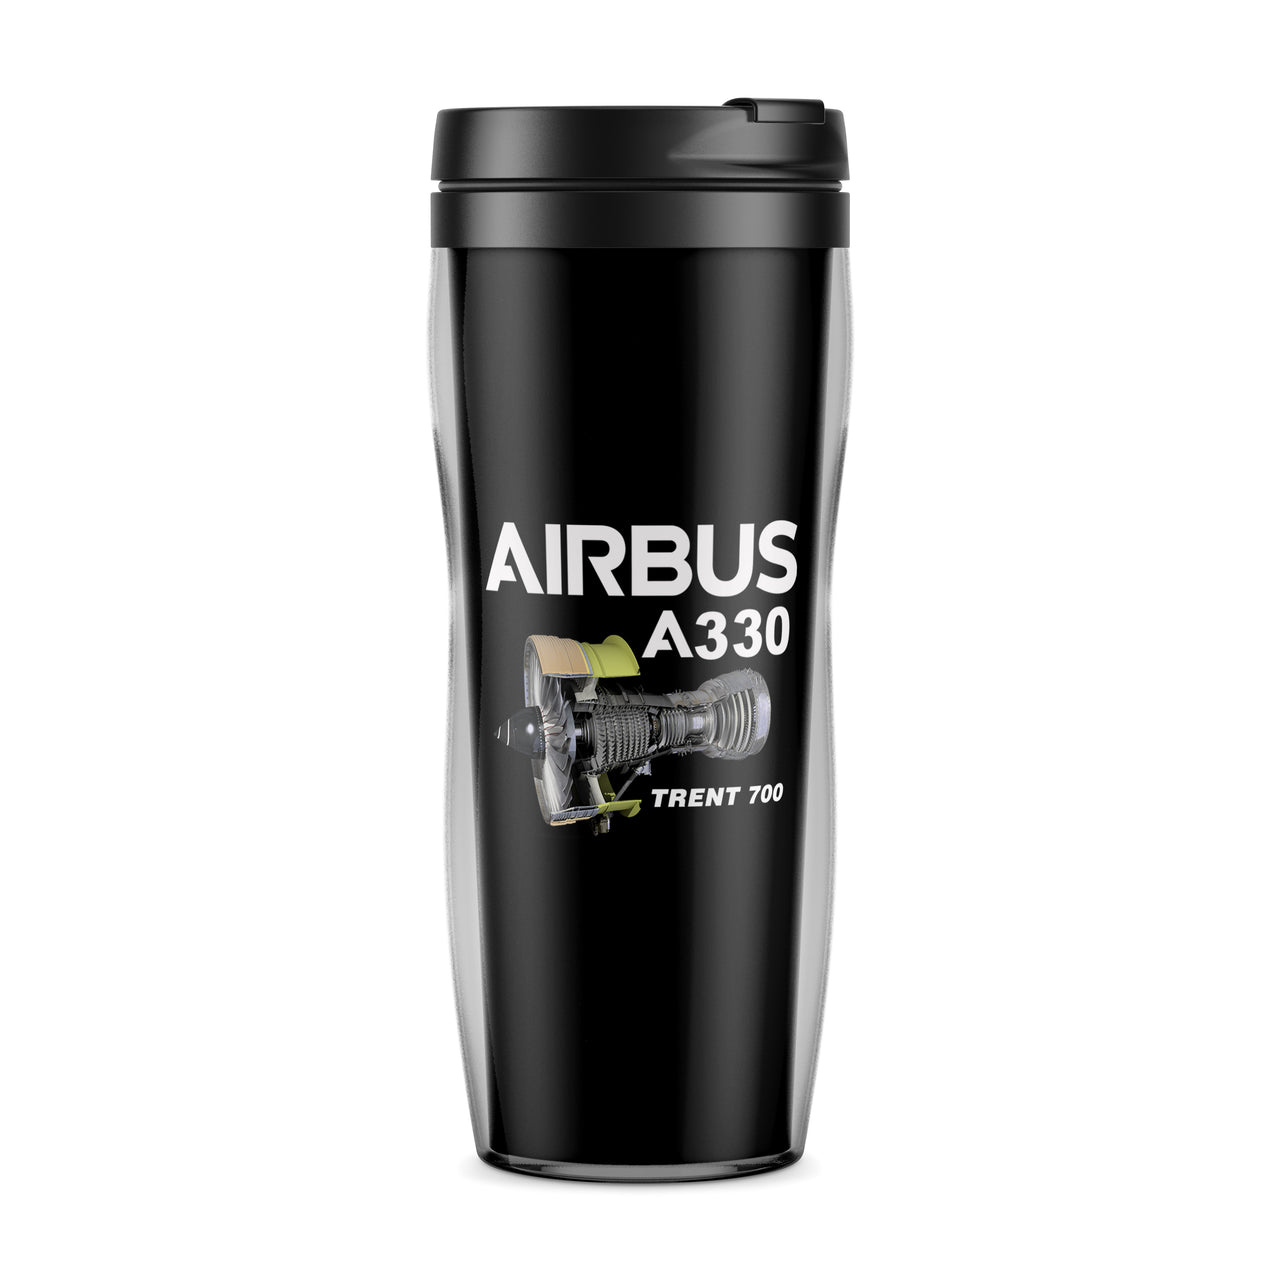 Airbus A330 & Trent 700 Engine Designed Travel Mugs